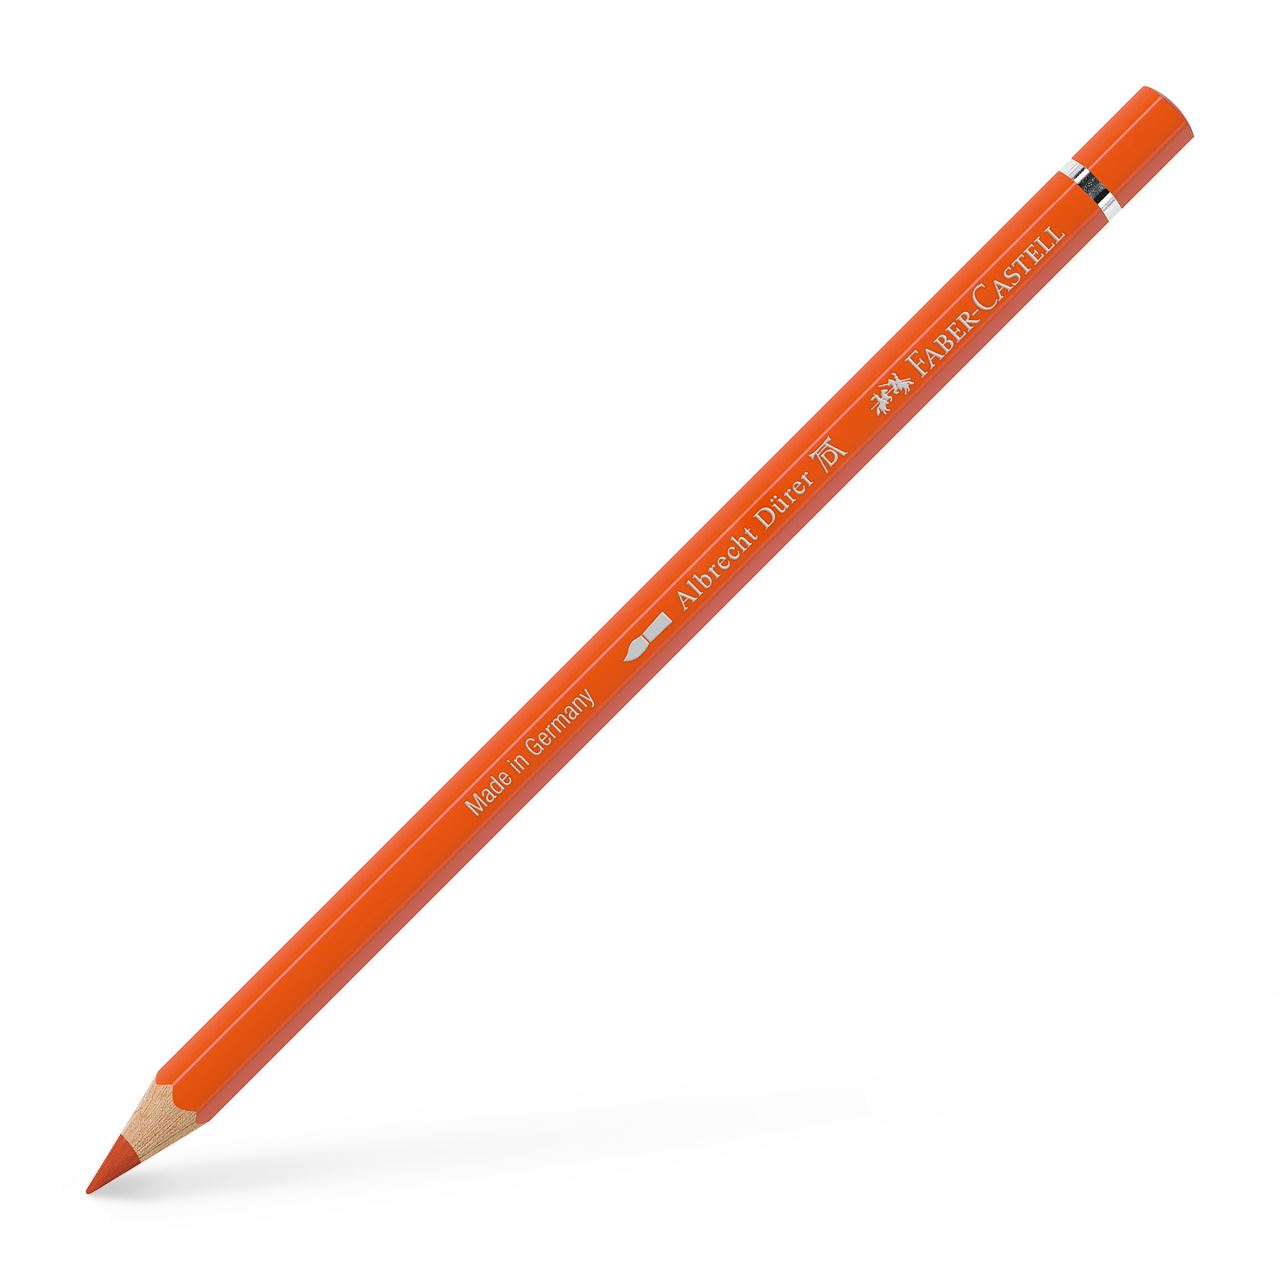 Faber-Castell - アルブレヒト・デューラー水彩色鉛筆・単色（ダークカドミウムオレンジ）